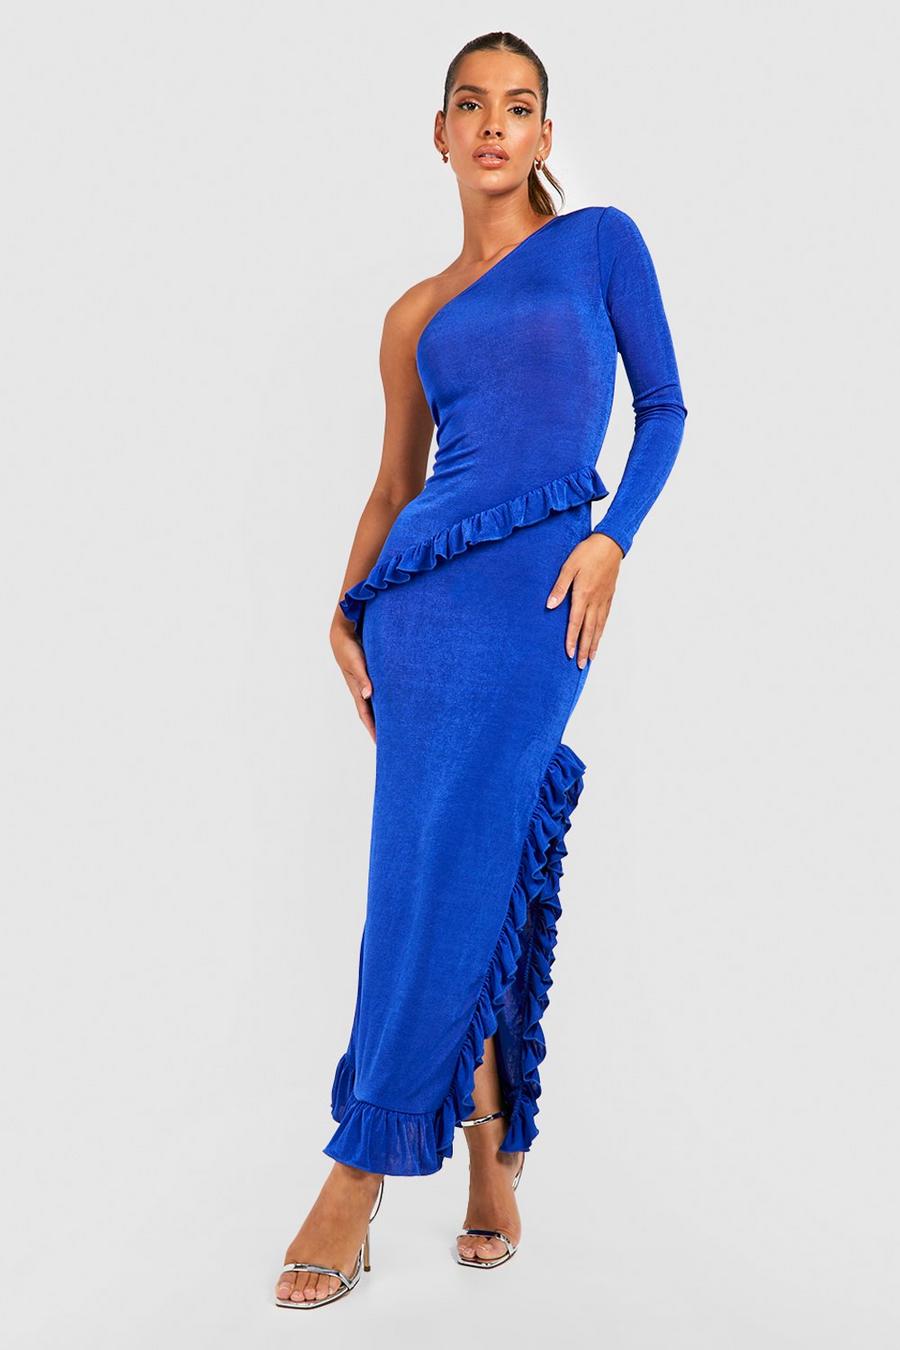 Cobalt blue Textured Slinky Ruffle One Shoulder Maxi Dress